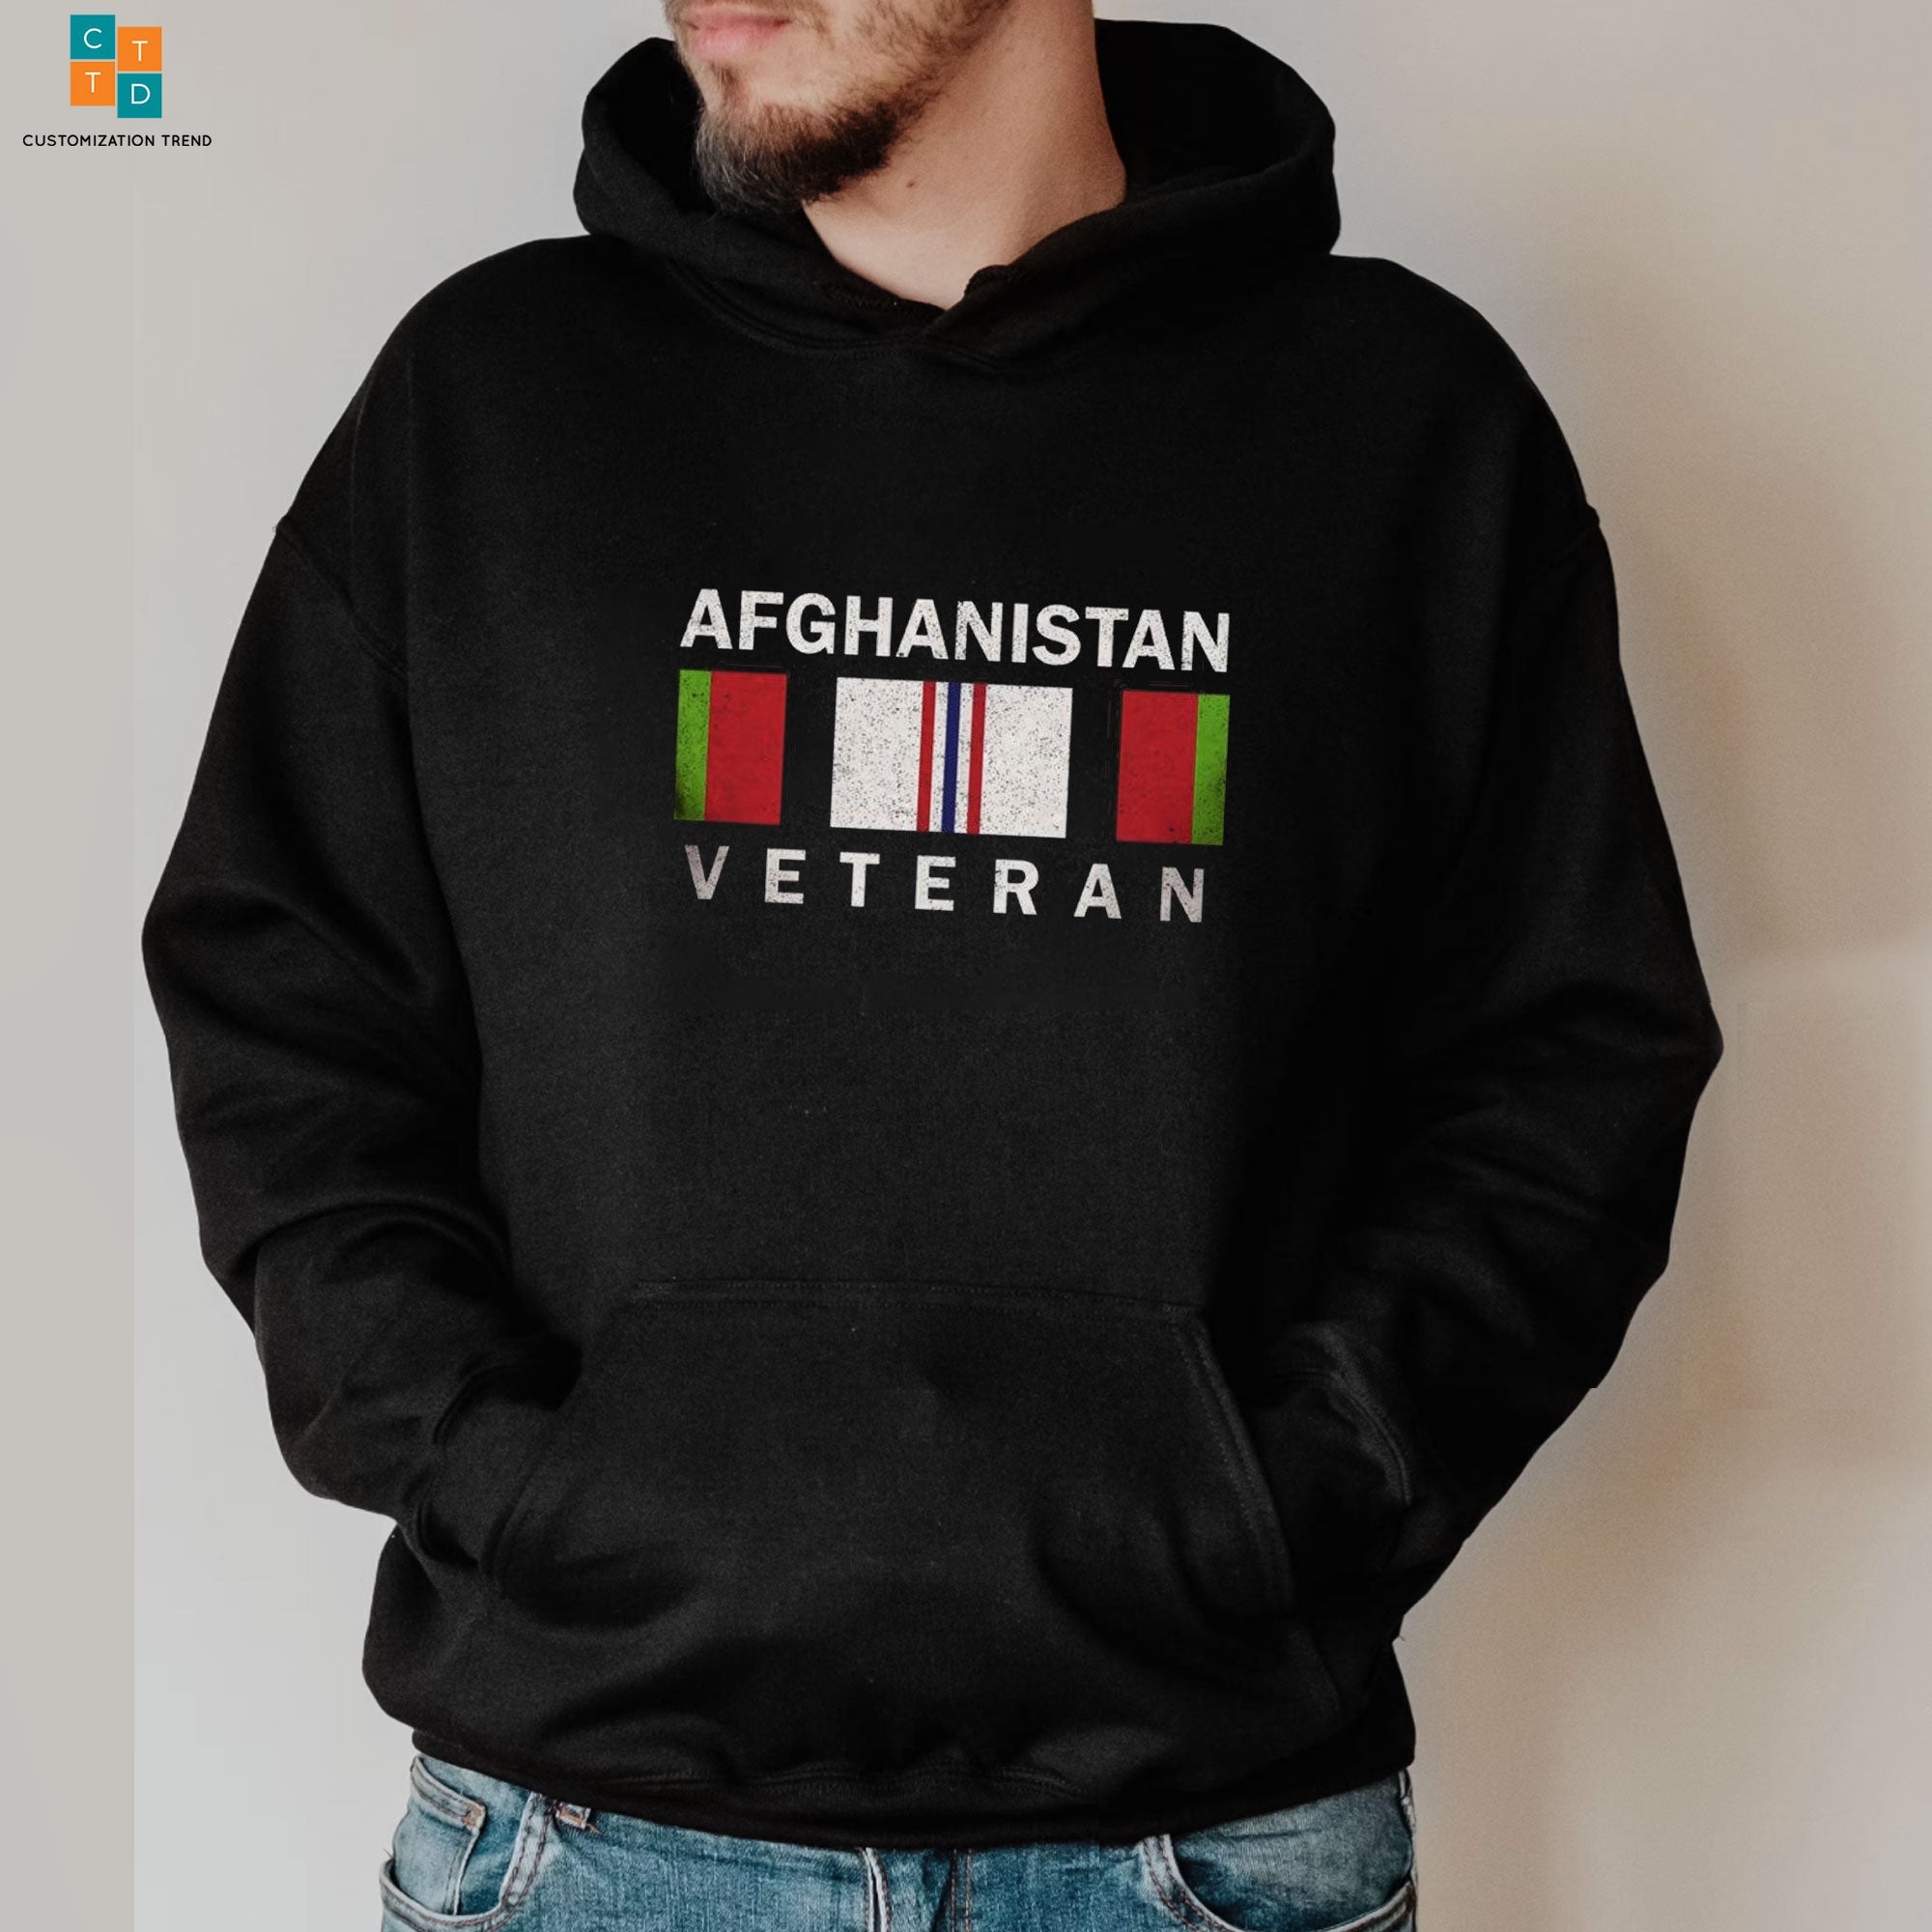 Afghanistan Veteran Hoodie, Shirt